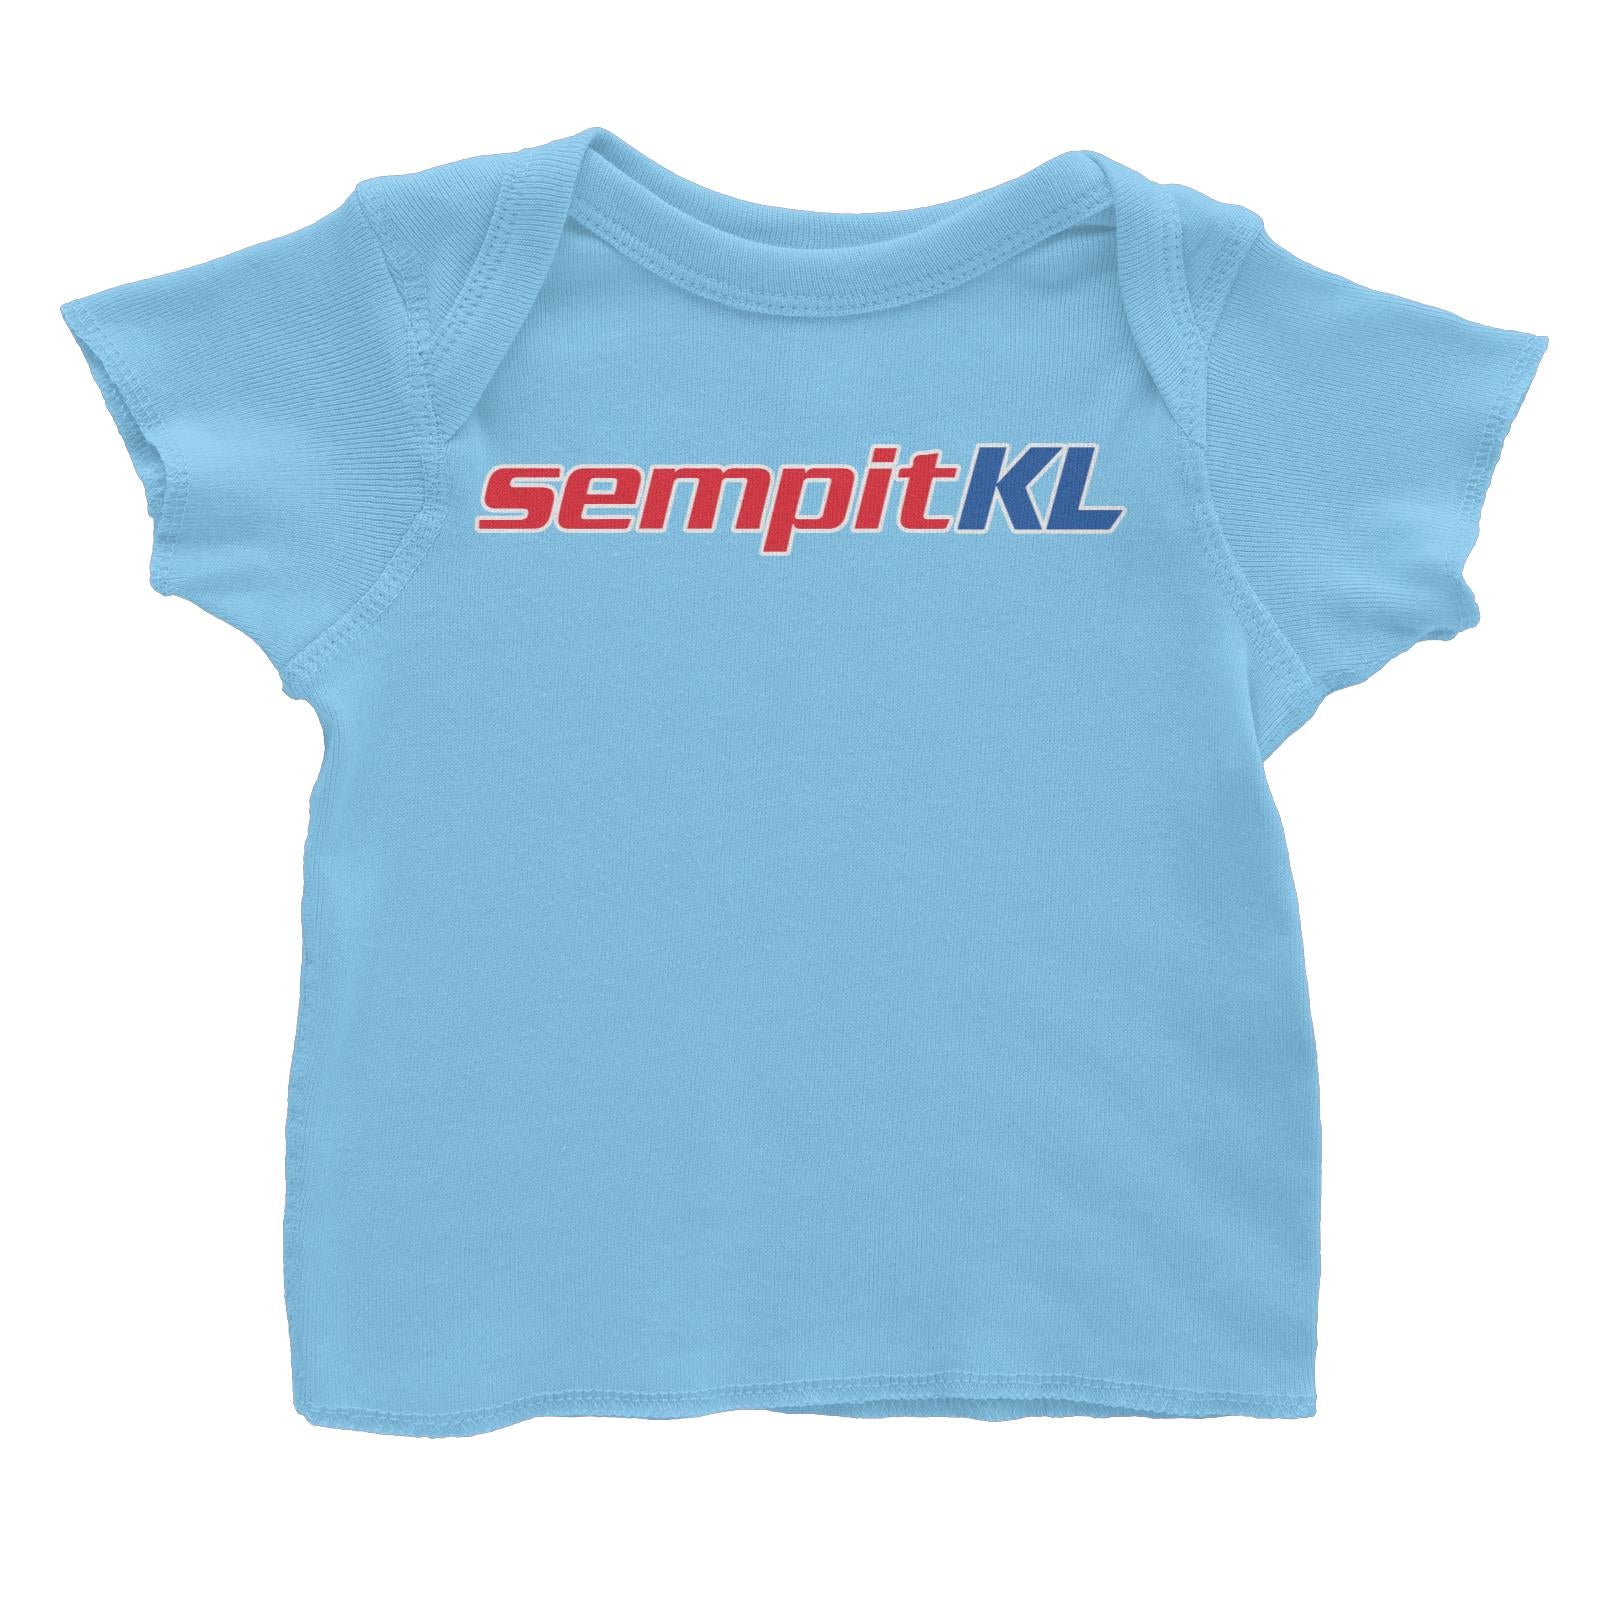 Slang Statement Sempitkl Baby T-Shirt